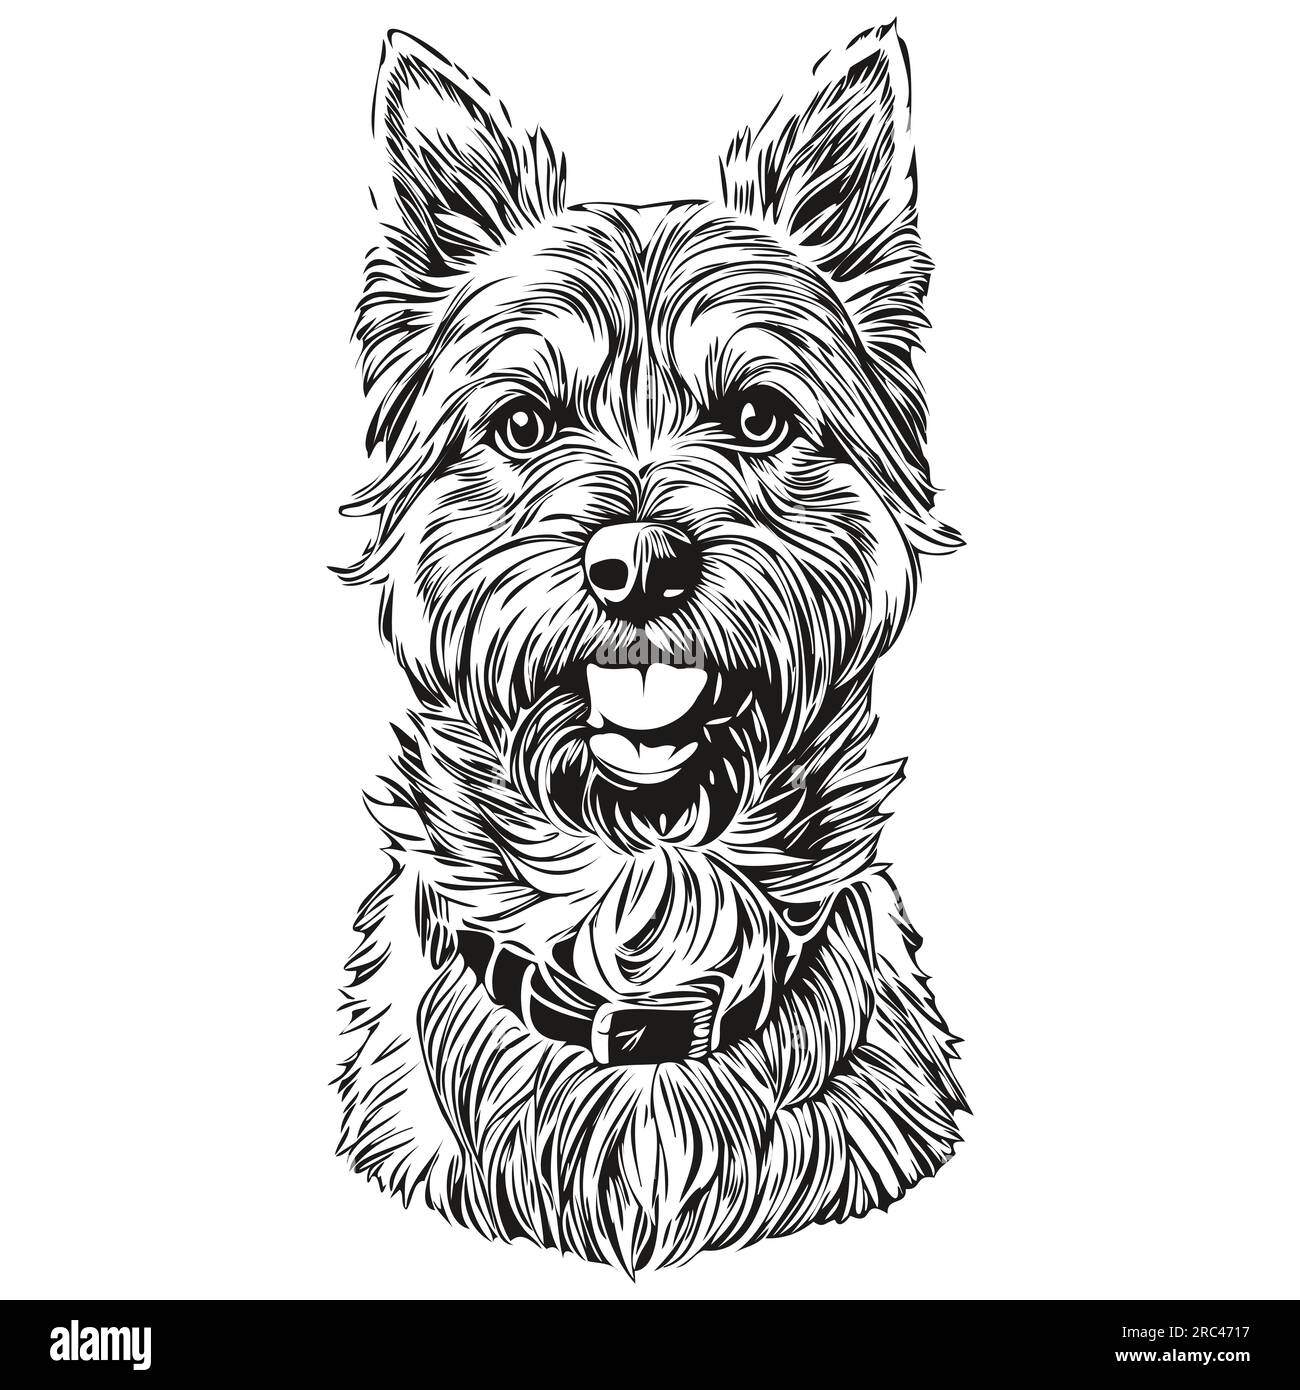 Border Terrier chien dessin au crayon réaliste en vecteur, illustration au trait d'art de visage de chien noir et blanc animal de compagnie réaliste de race Illustration de Vecteur